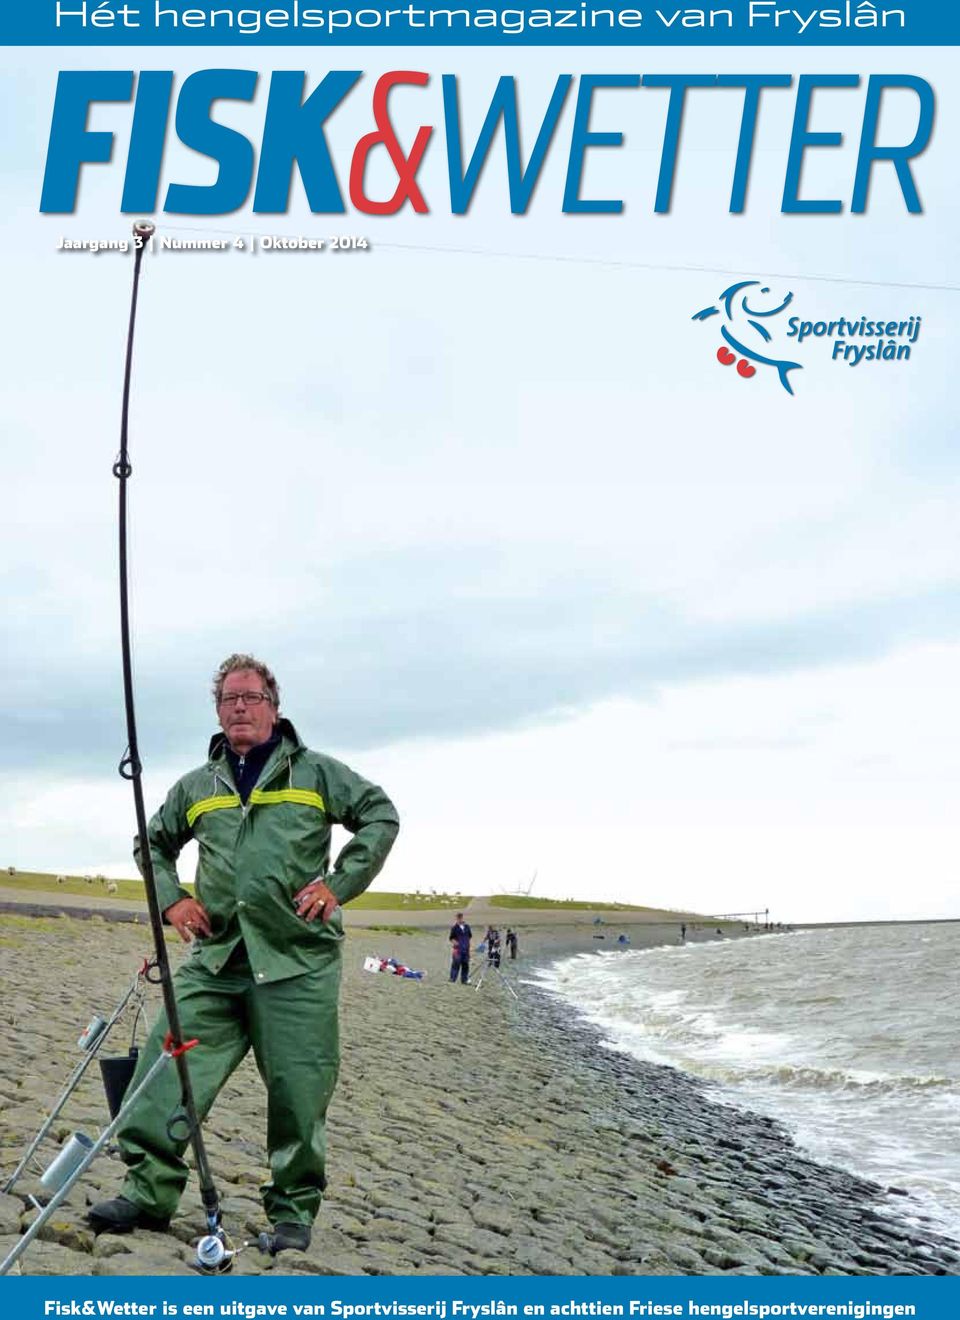 2014 Fisk&Wetter is een uitgave van